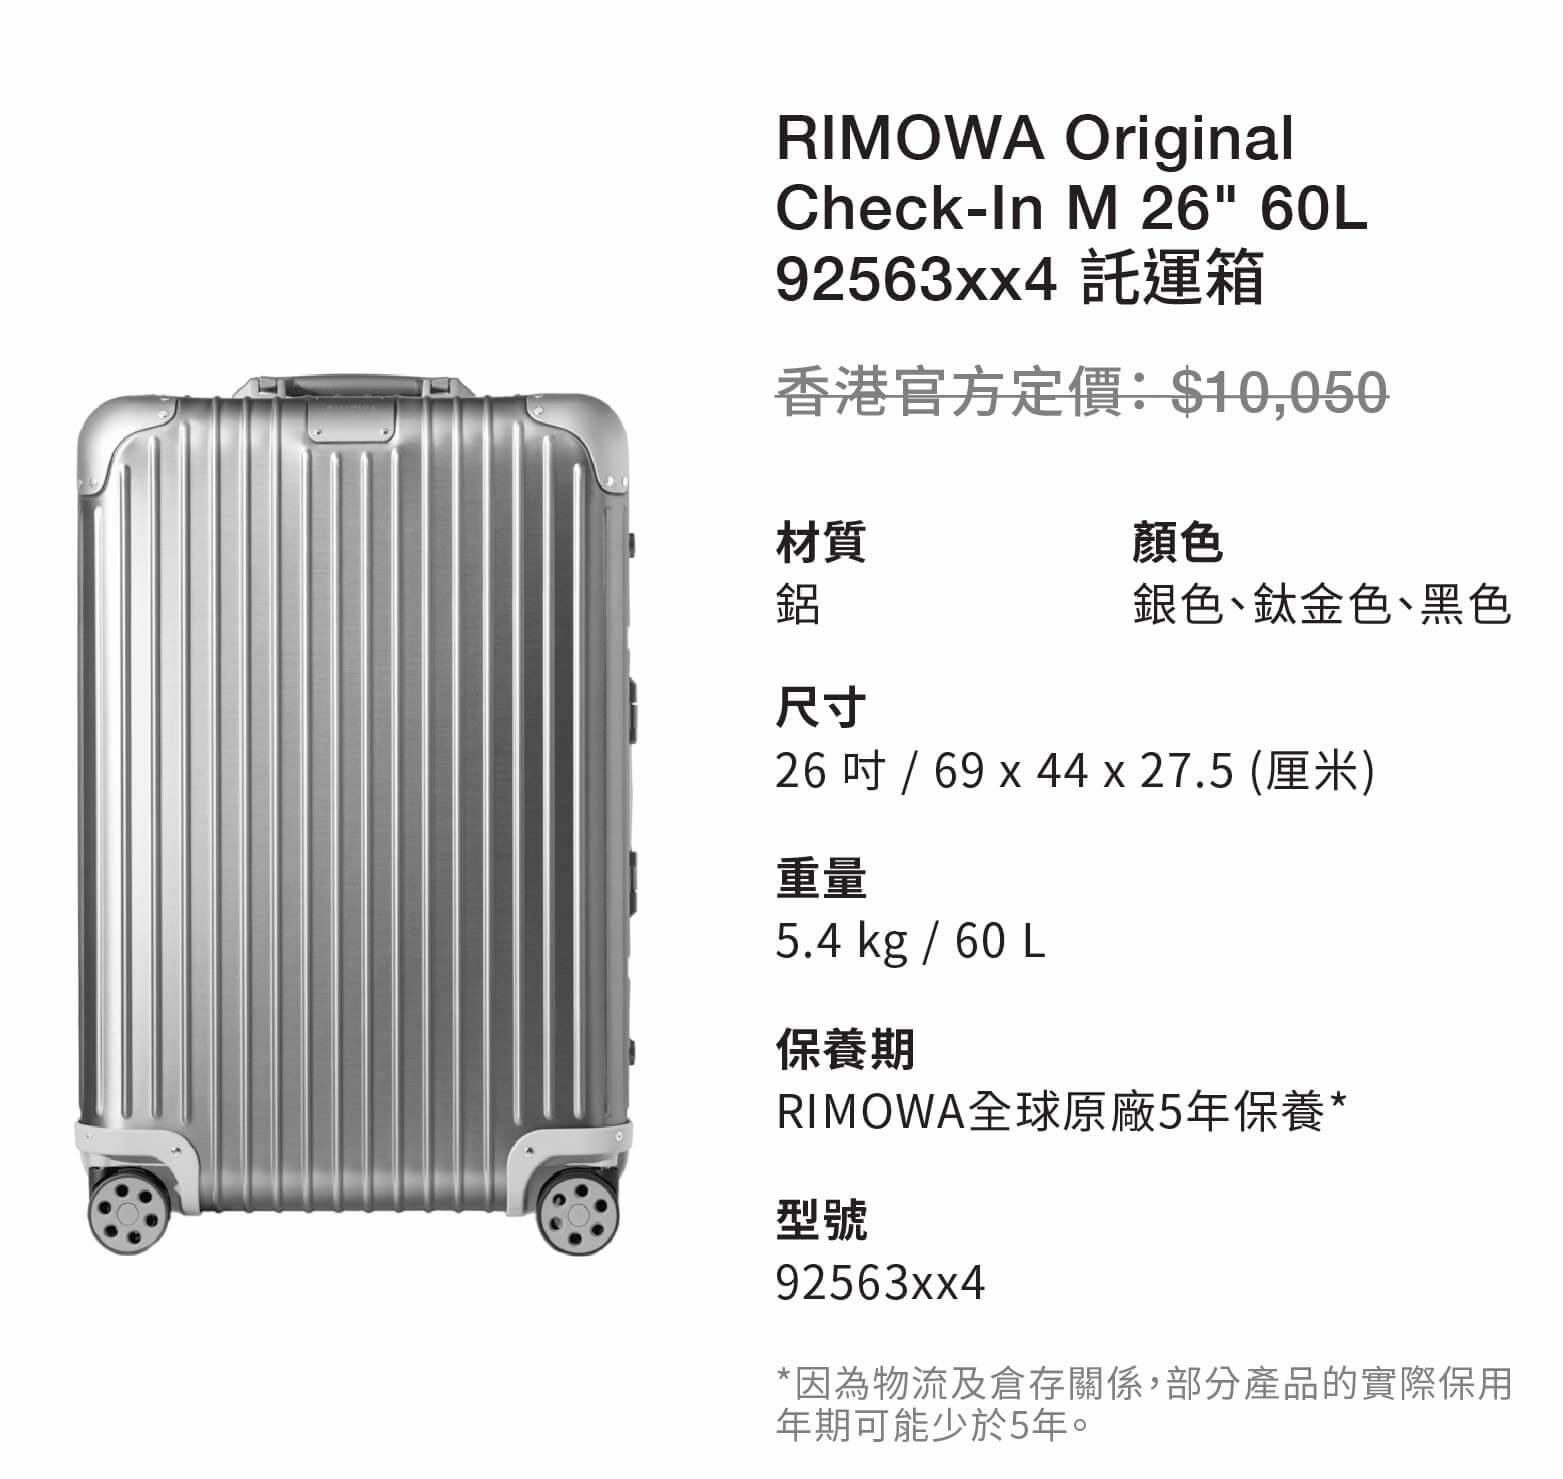 RIMOWA Original Check-In M 26